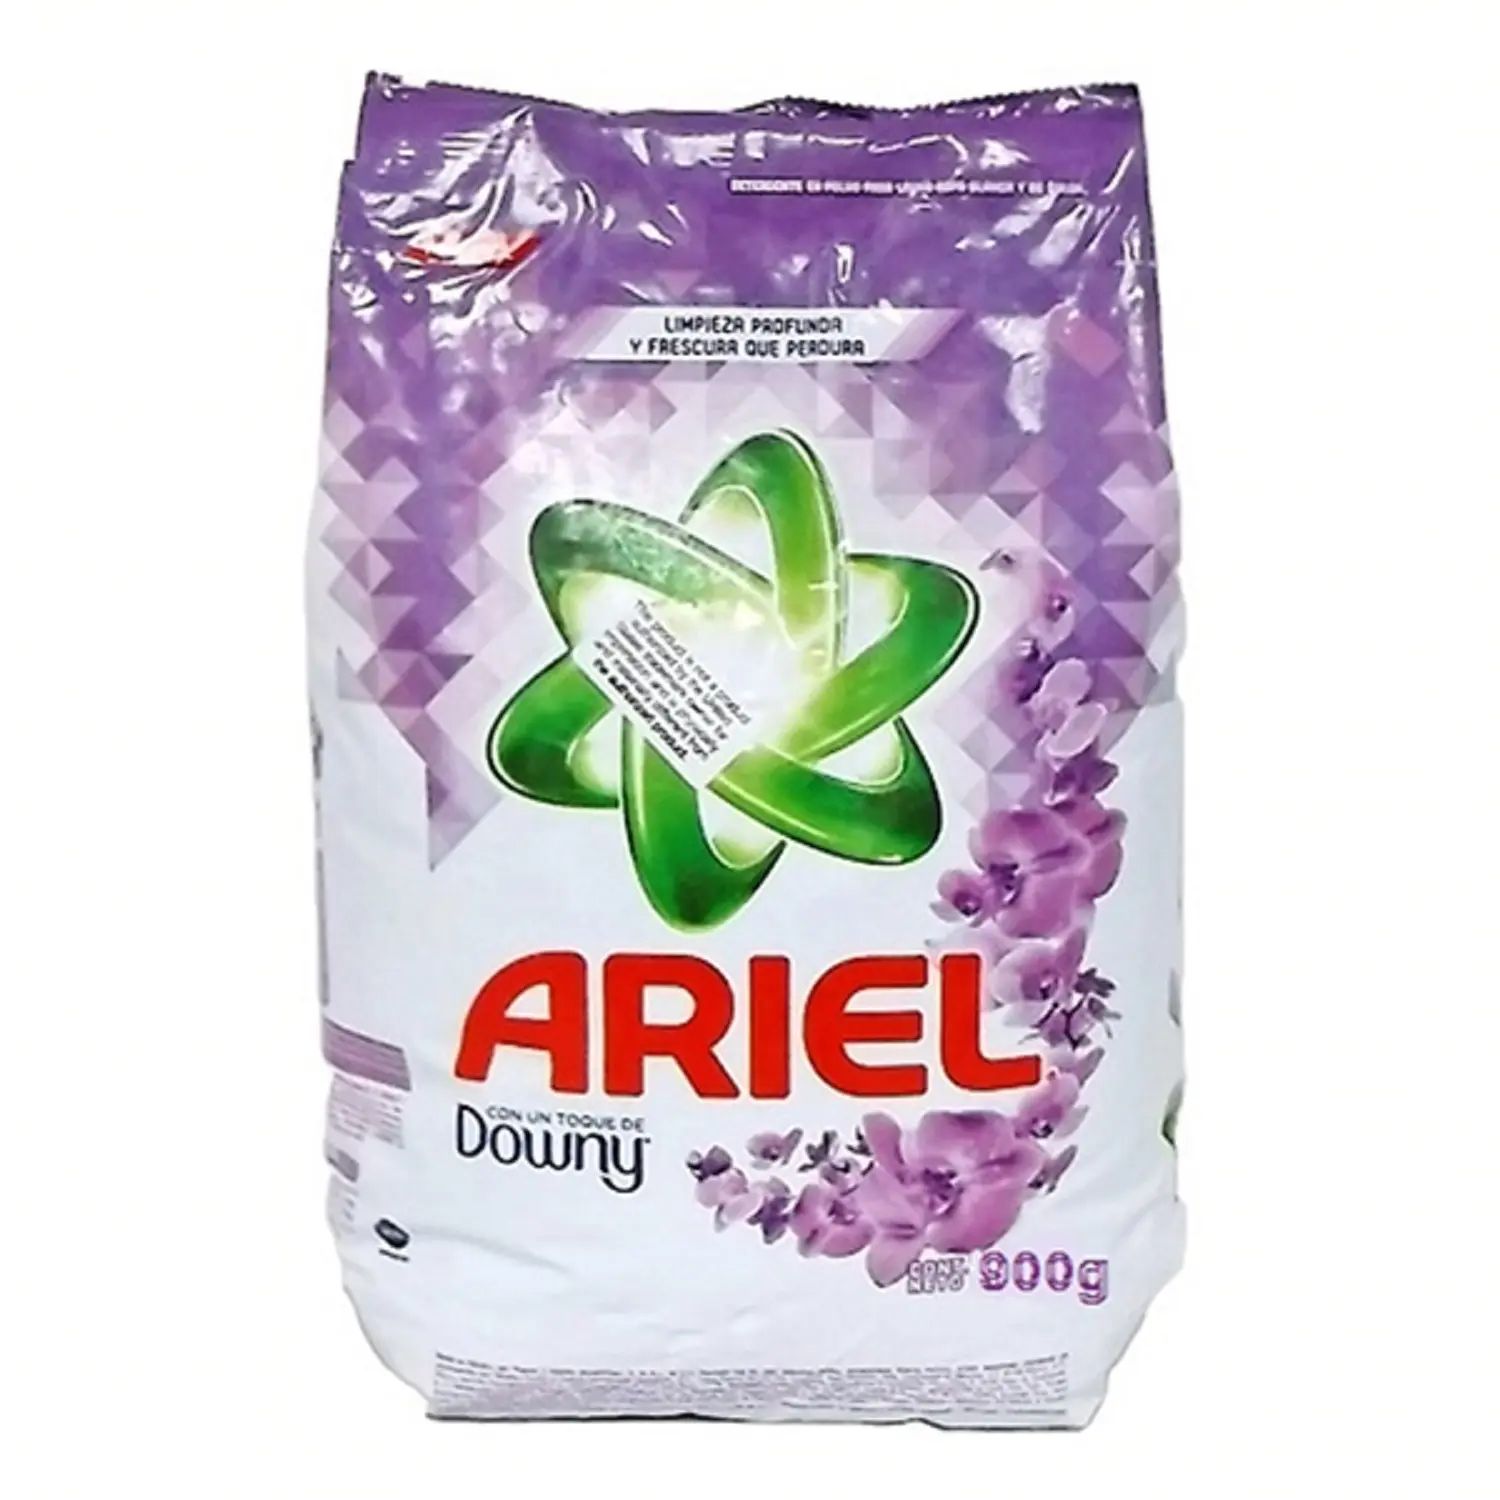 לבן כביסה אבקת אבקה-Ariell חומר ניקוי אבקת כביסה 3.6kg-הנמכר ביותר אבקת נמוך מחיר